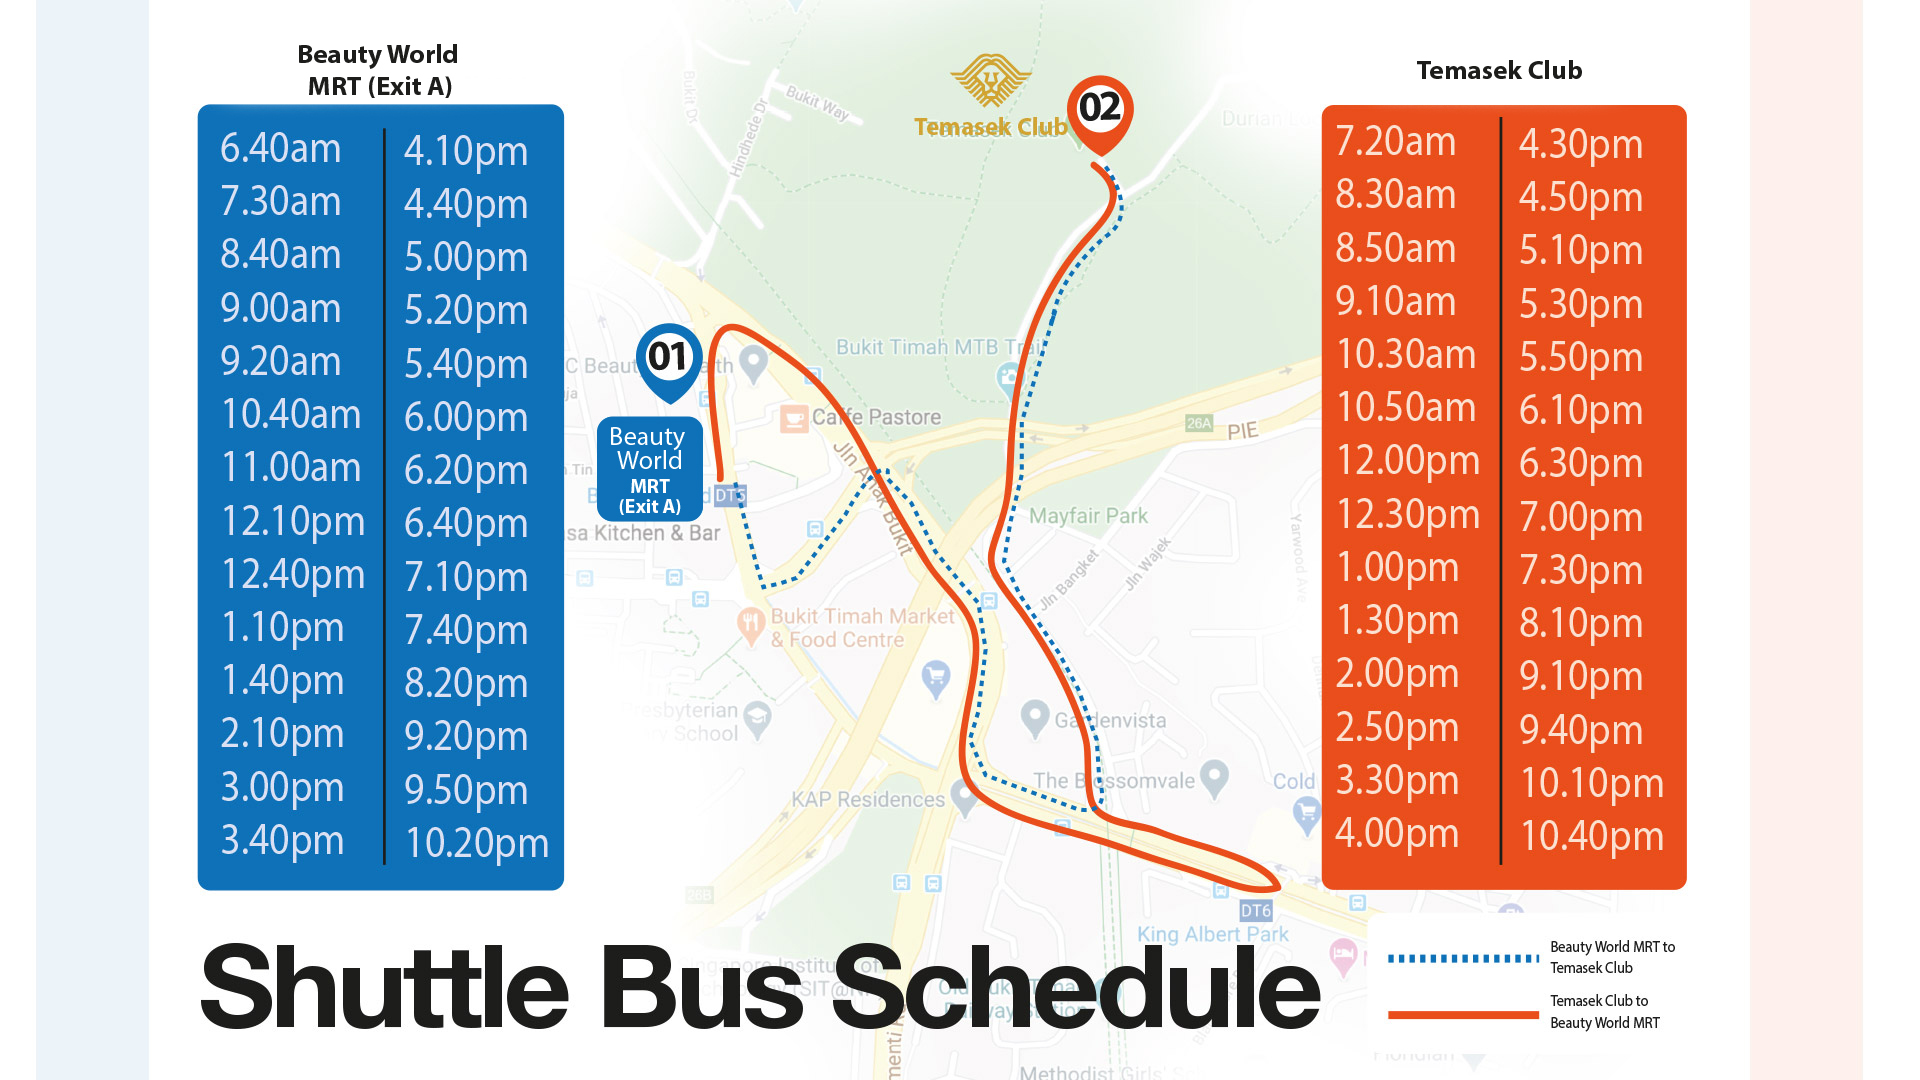 510 van dyke bus schedule